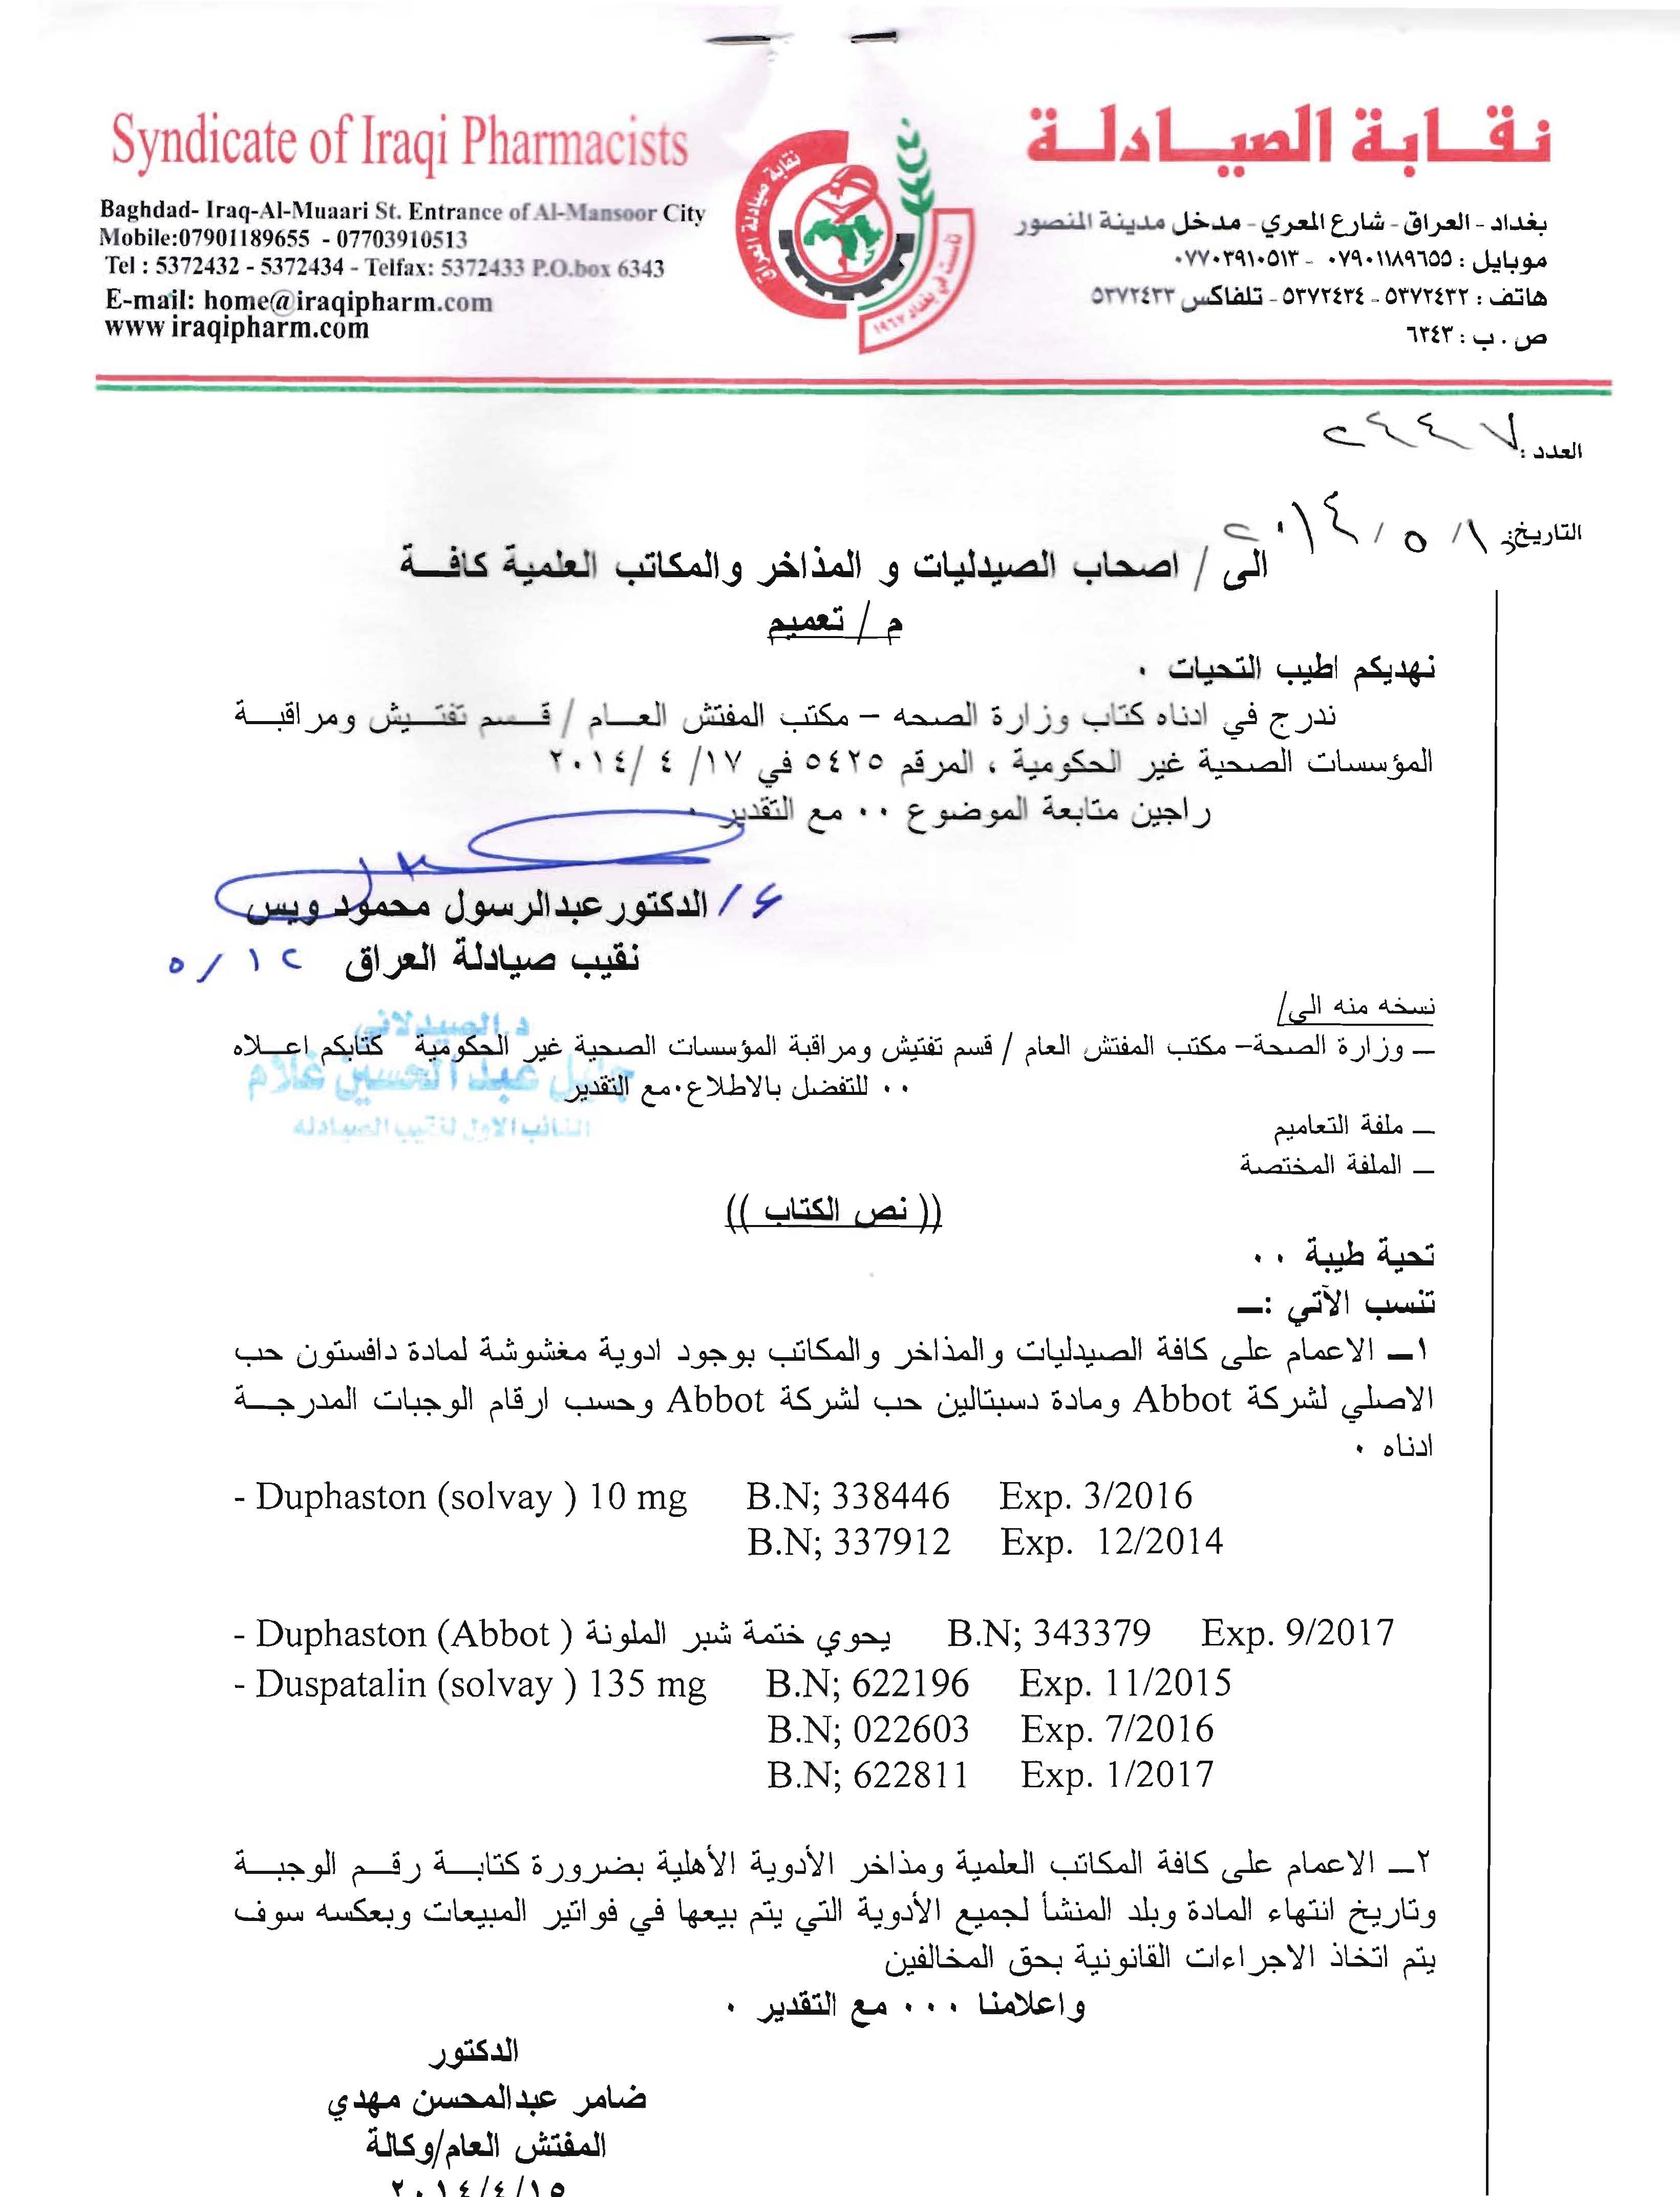 تعميم وزارة الصحة بخصوص مادة مغشوشة نقابة صيادلة العراق